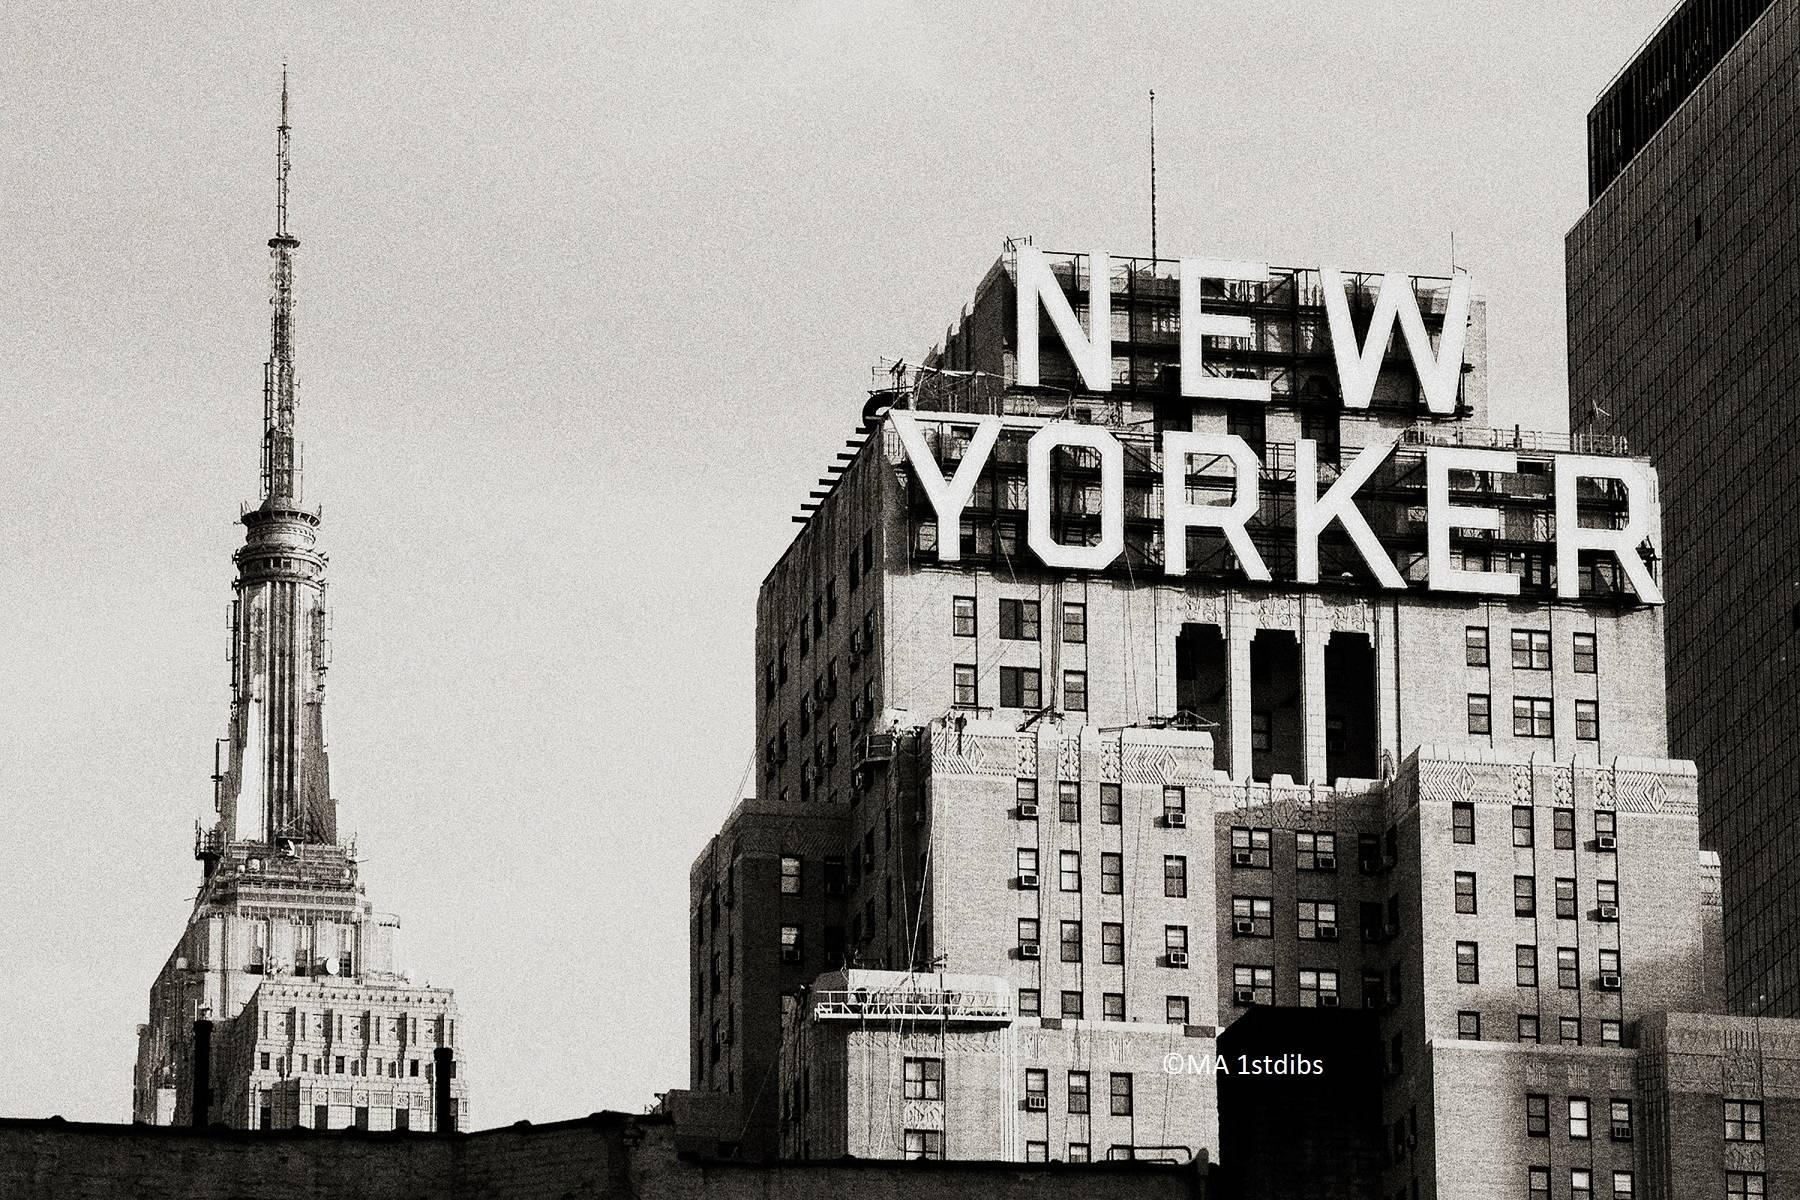 Alejandro Cerutti Landscape Photograph - New York City landscape black and white photo - New Yorker - 24x36in. mounted